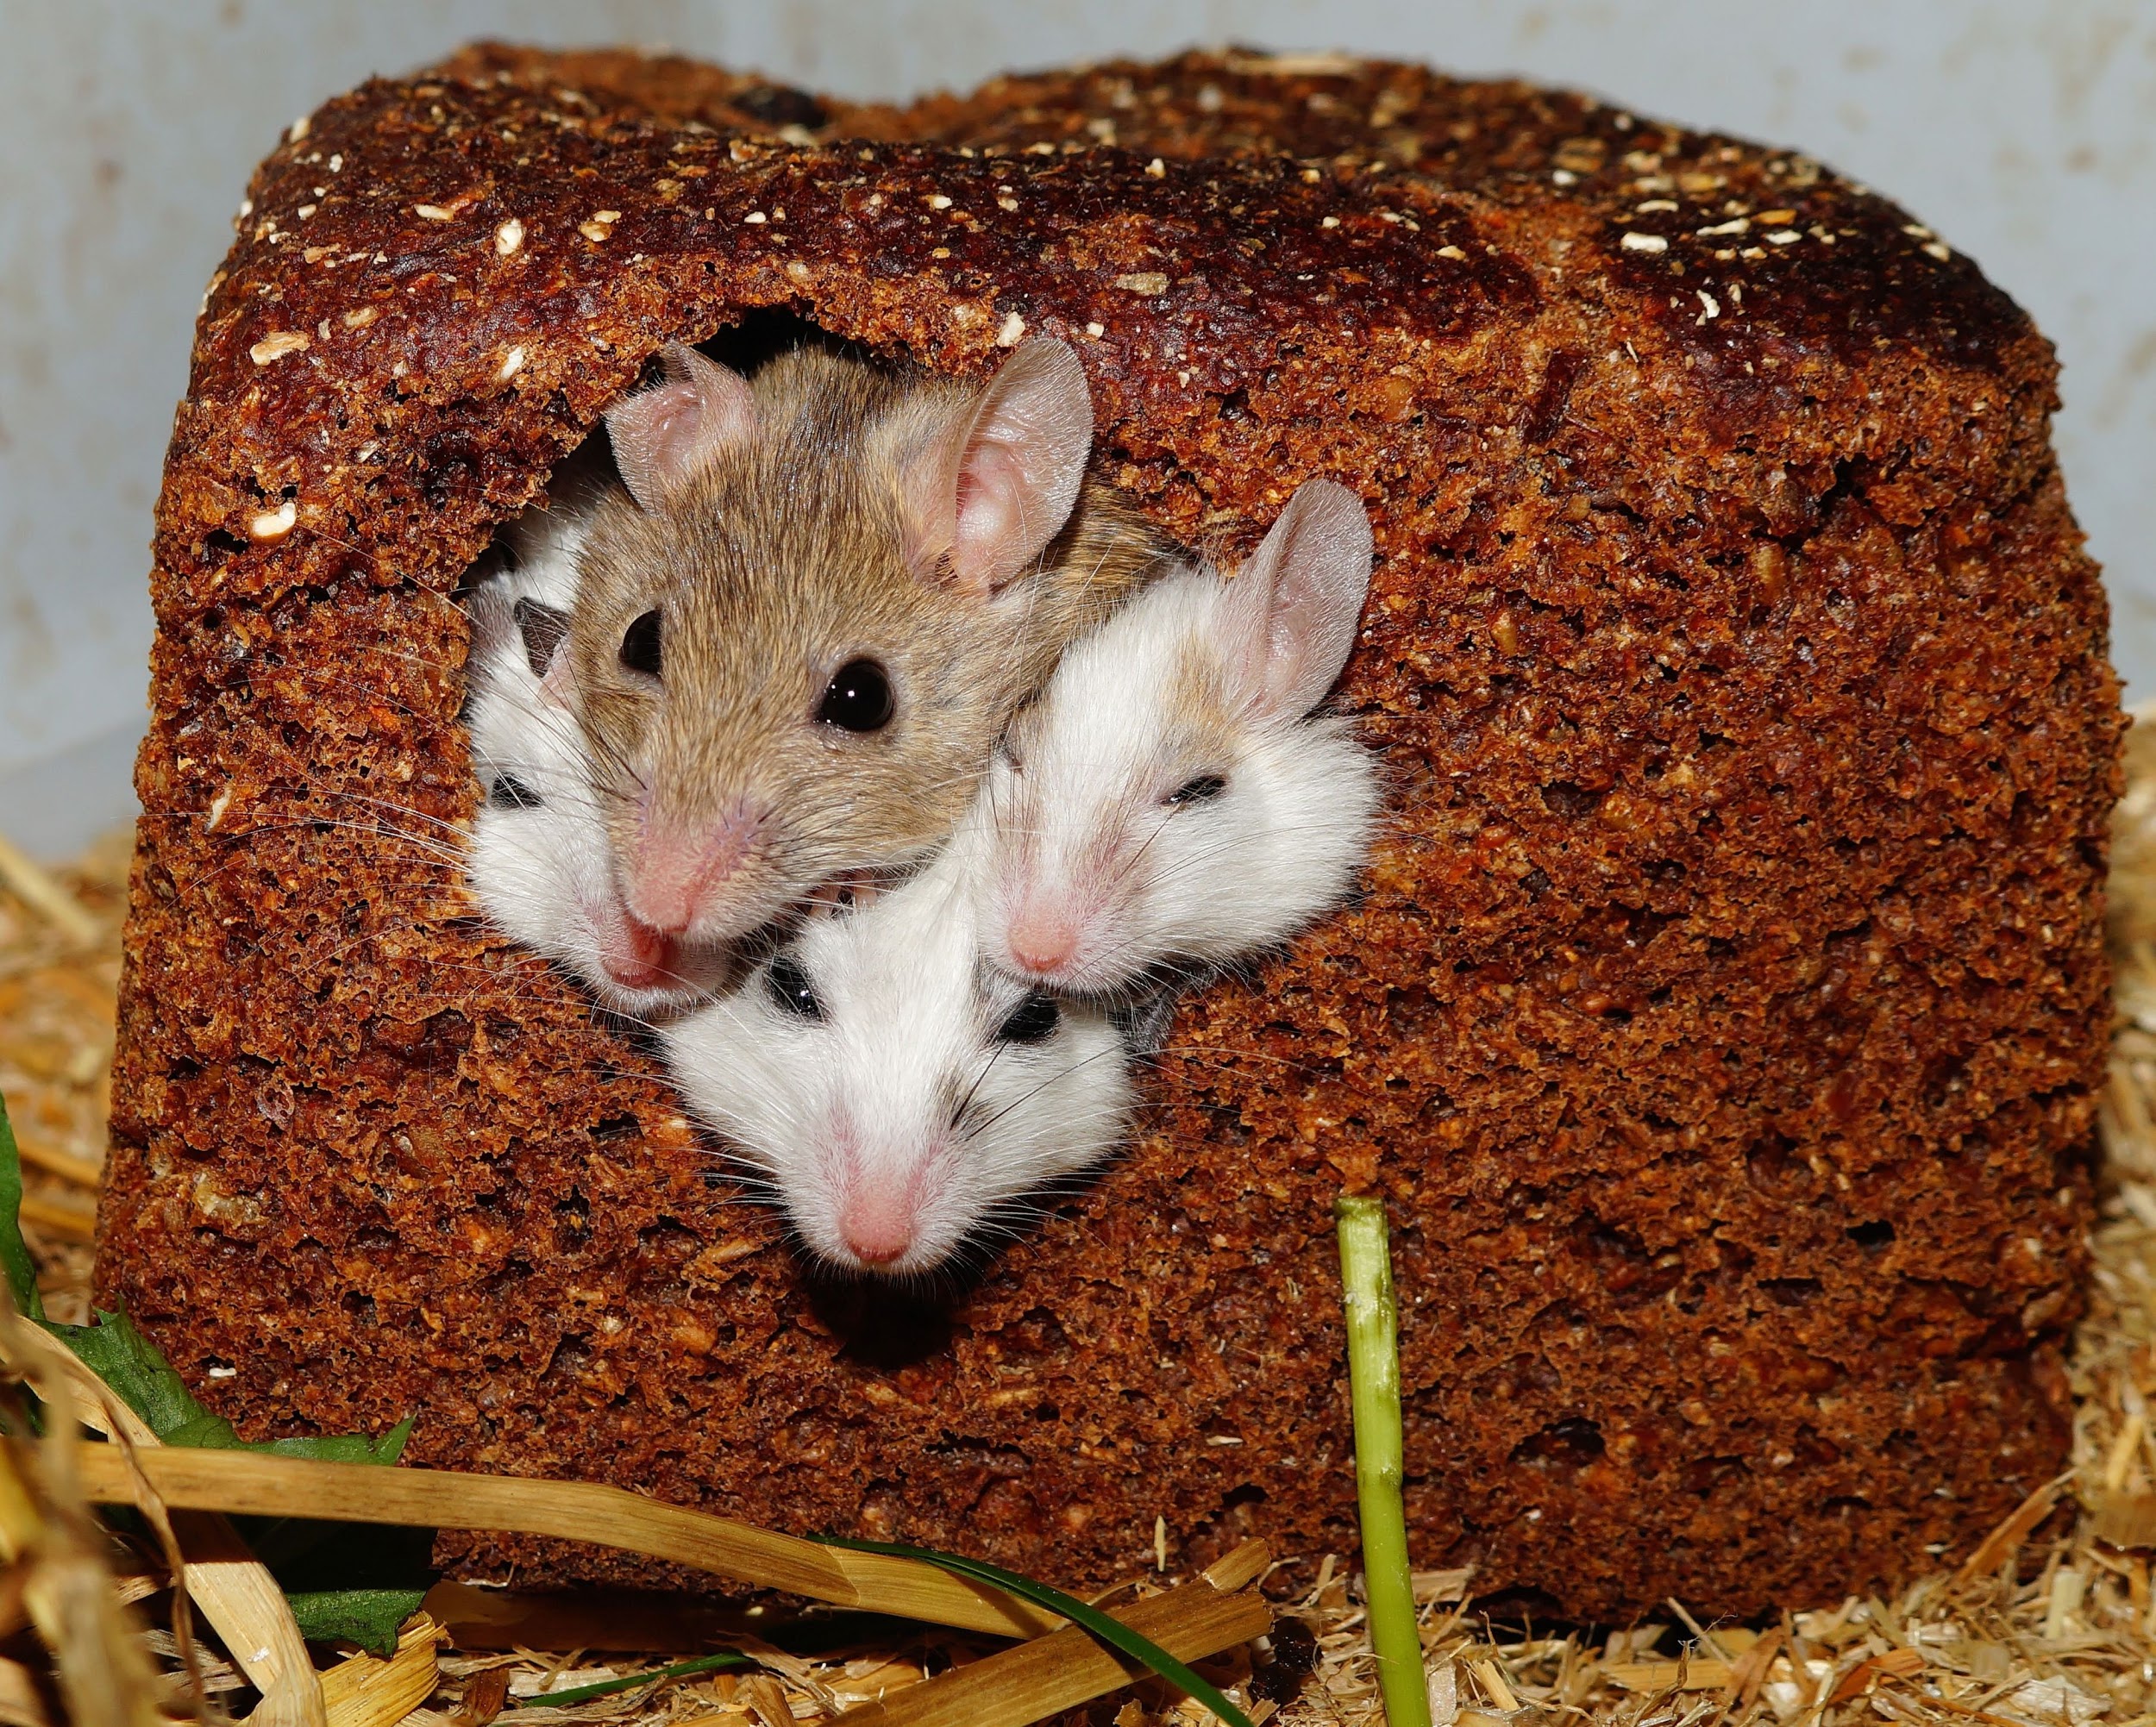 Muizen ruiken elkaars pijn – jij ook?